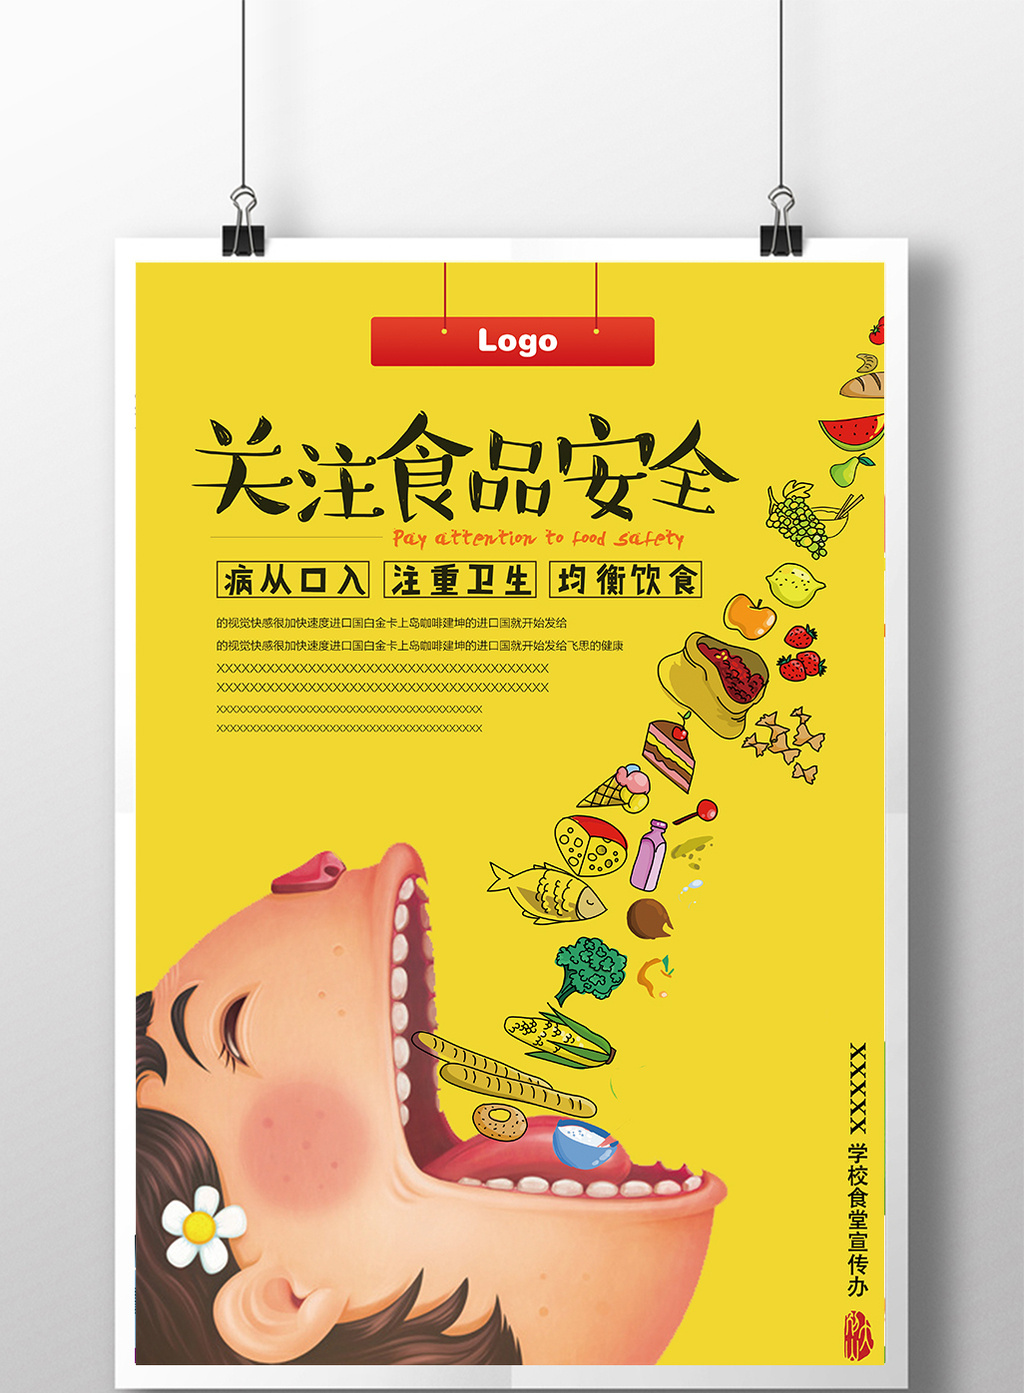 食品安全创意卡通公益海报PSD广告设计素材海报模板免费下载-享设计